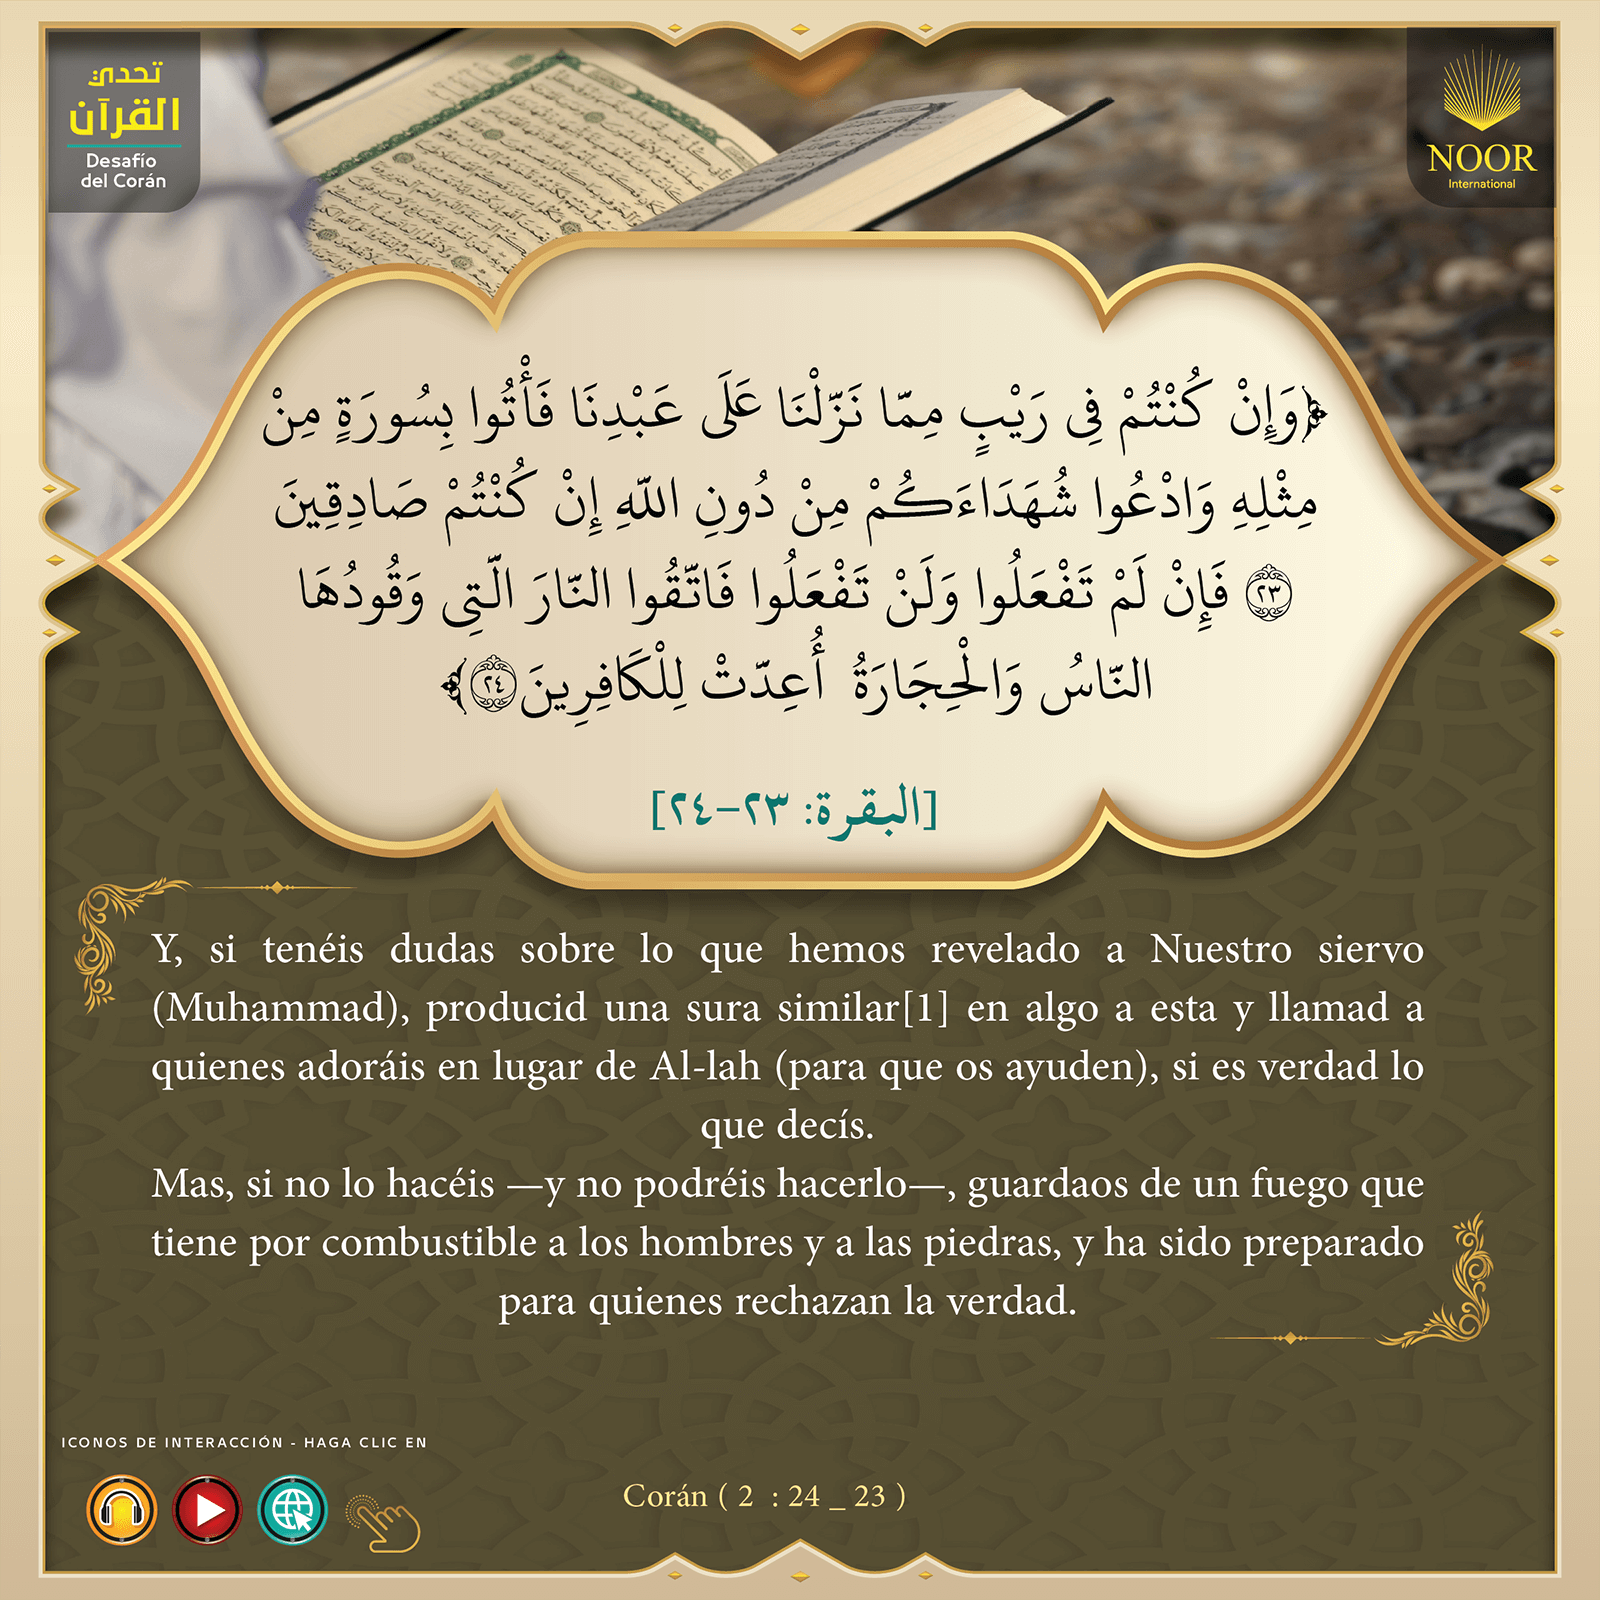 "Y, si tenéis dudas sobre lo que hemos revelado a Nuestro siervo (Muhammad),..."